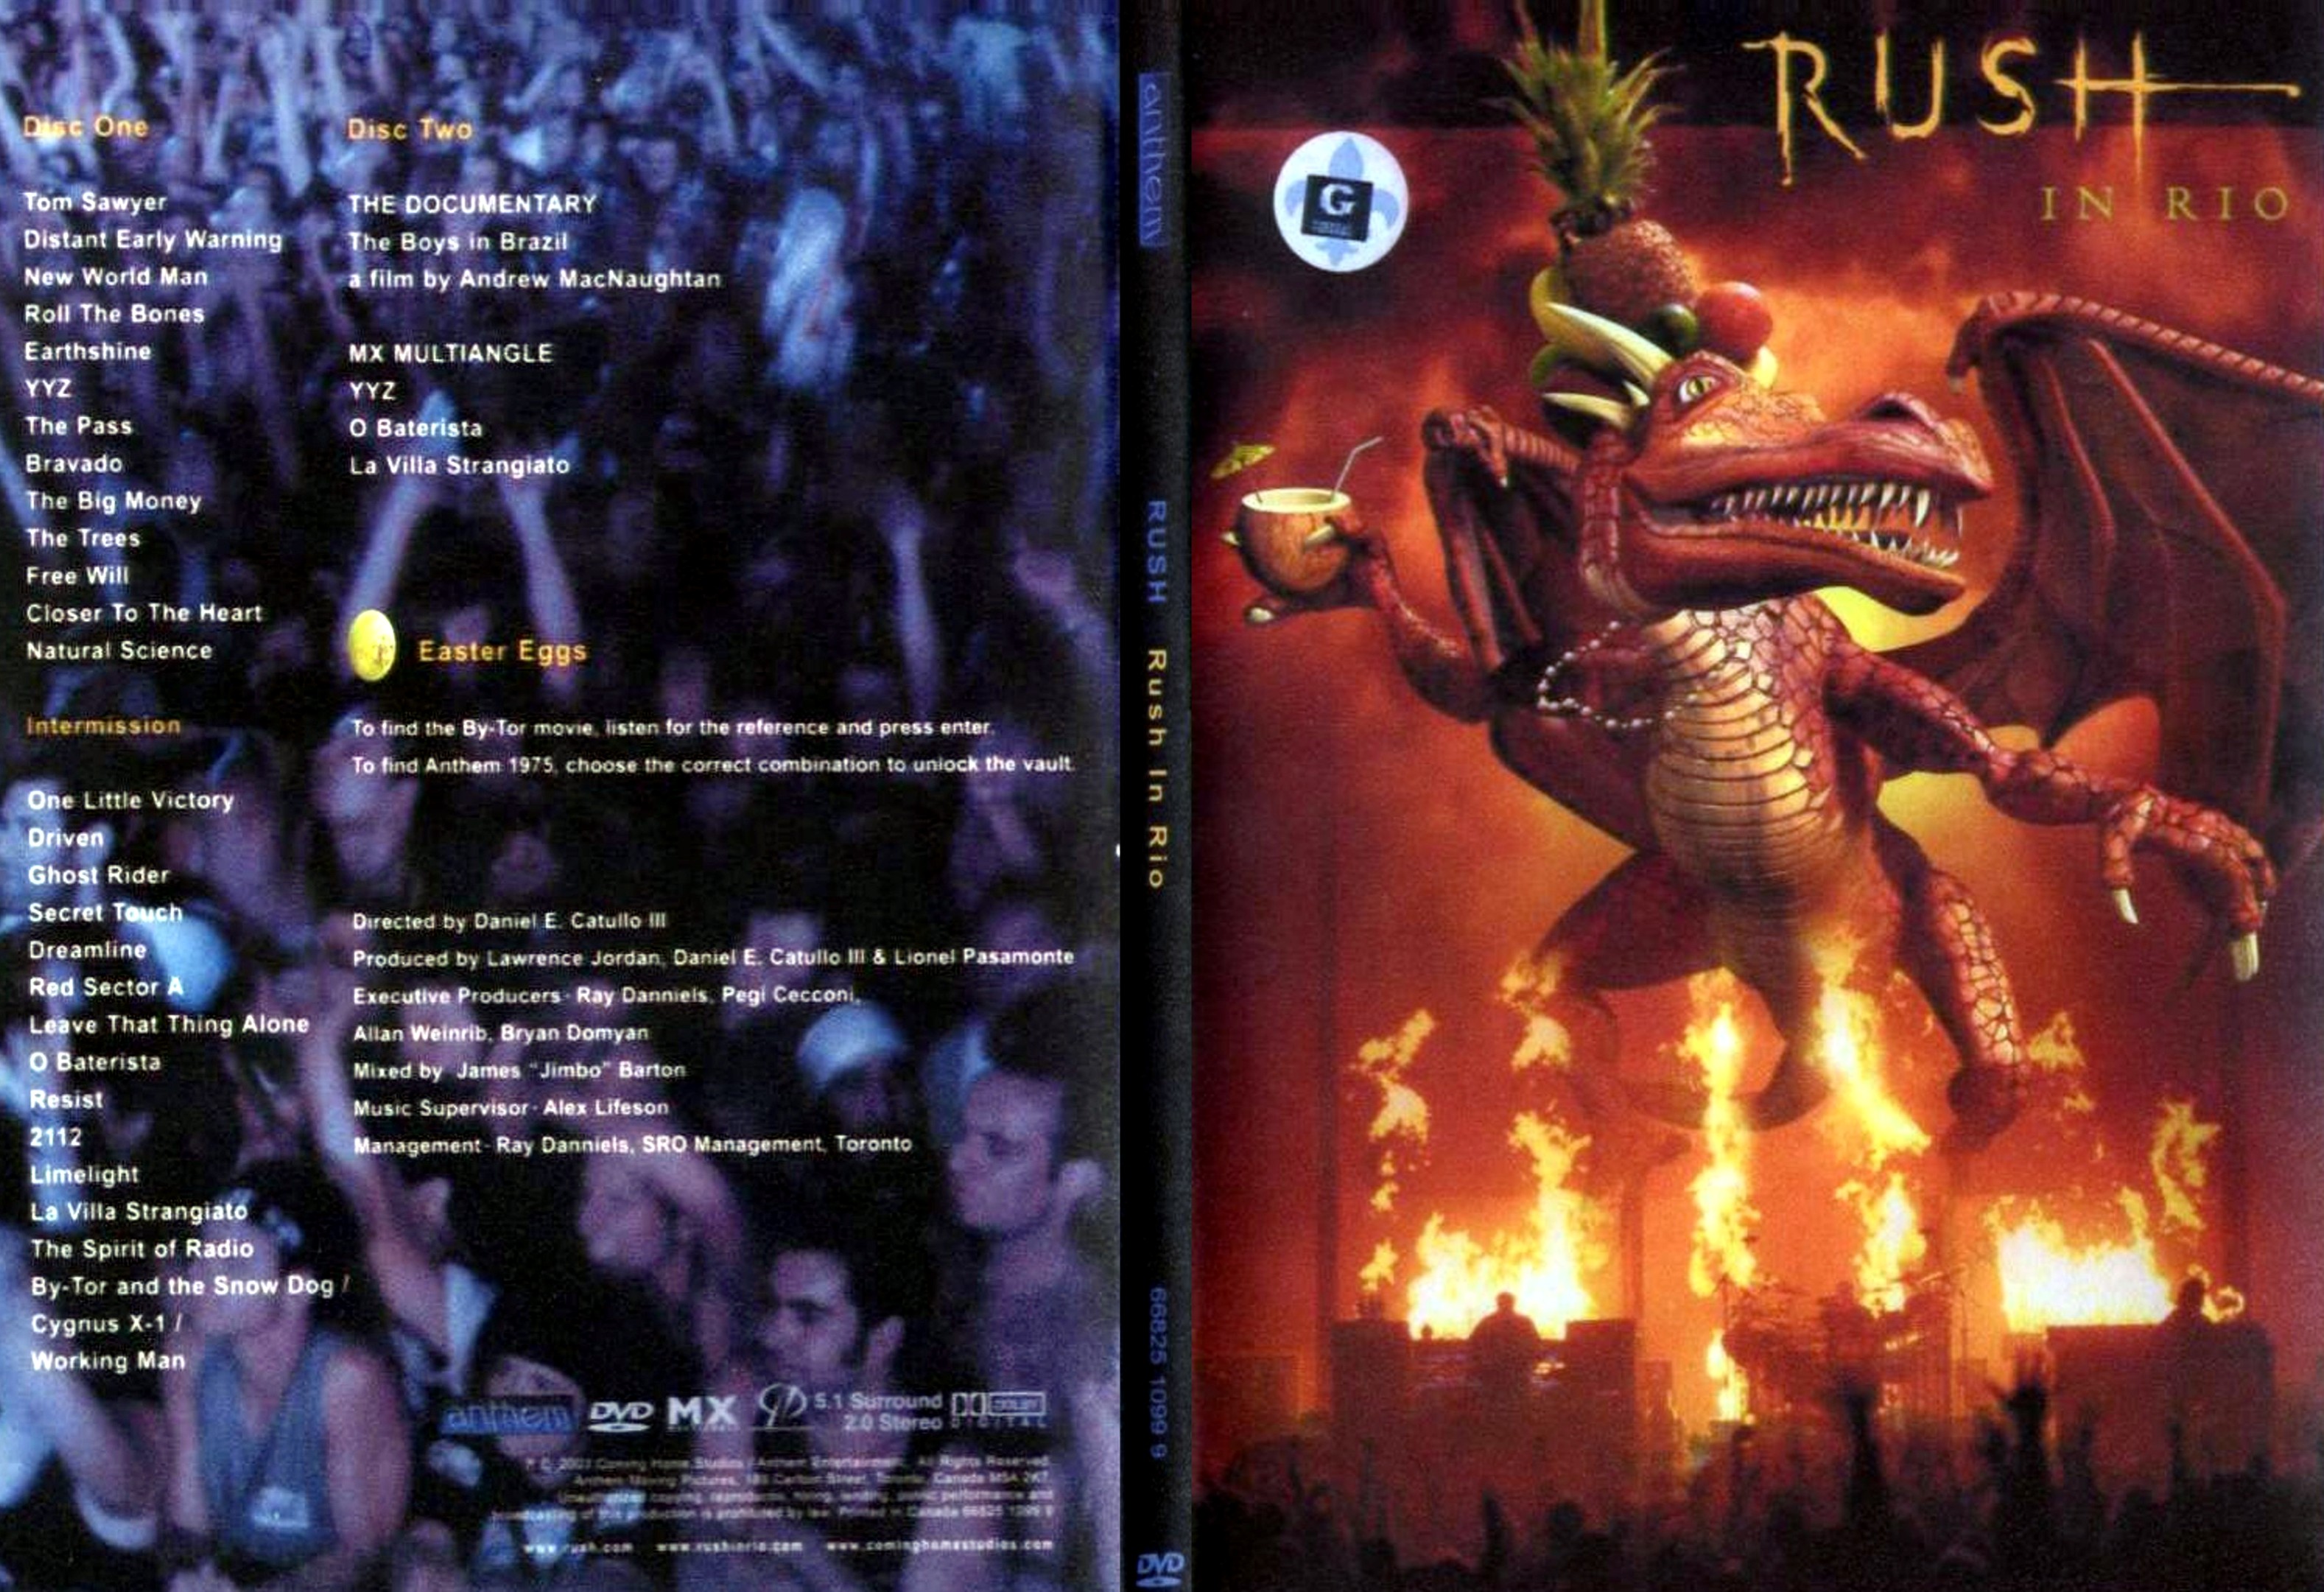 Jaquette DVD Rush in Rio - SLIM